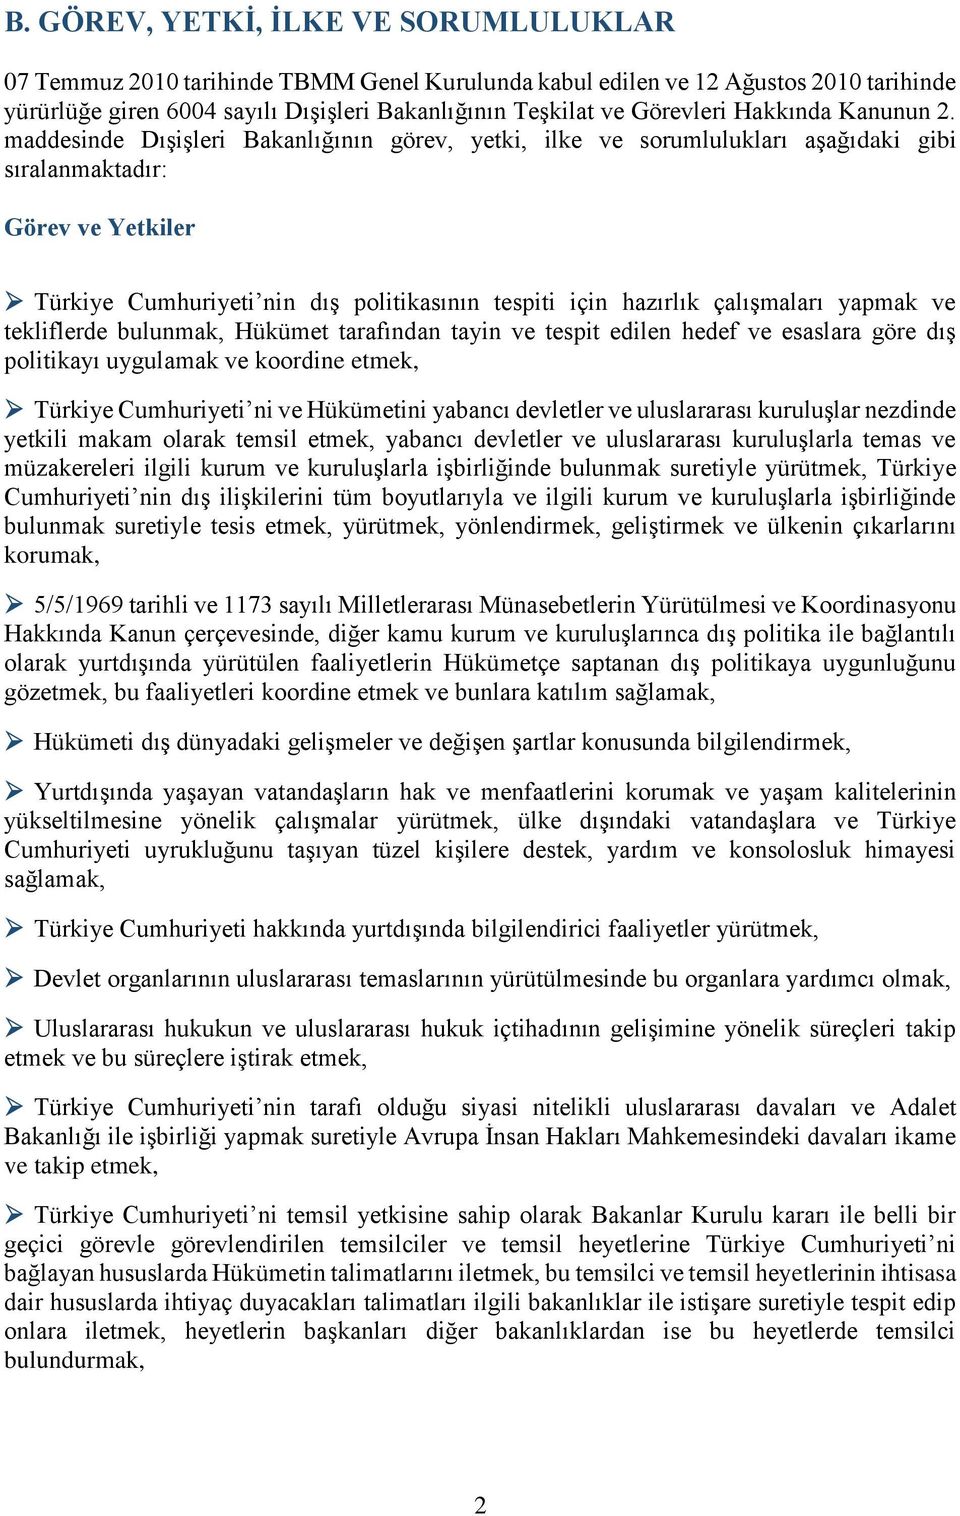 maddesinde Dışişleri Bakanlığının görev, yetki, ilke ve sorumlulukları aşağıdaki gibi sıralanmaktadır: Görev ve Yetkiler Türkiye Cumhuriyeti nin dış politikasının tespiti için hazırlık çalışmaları